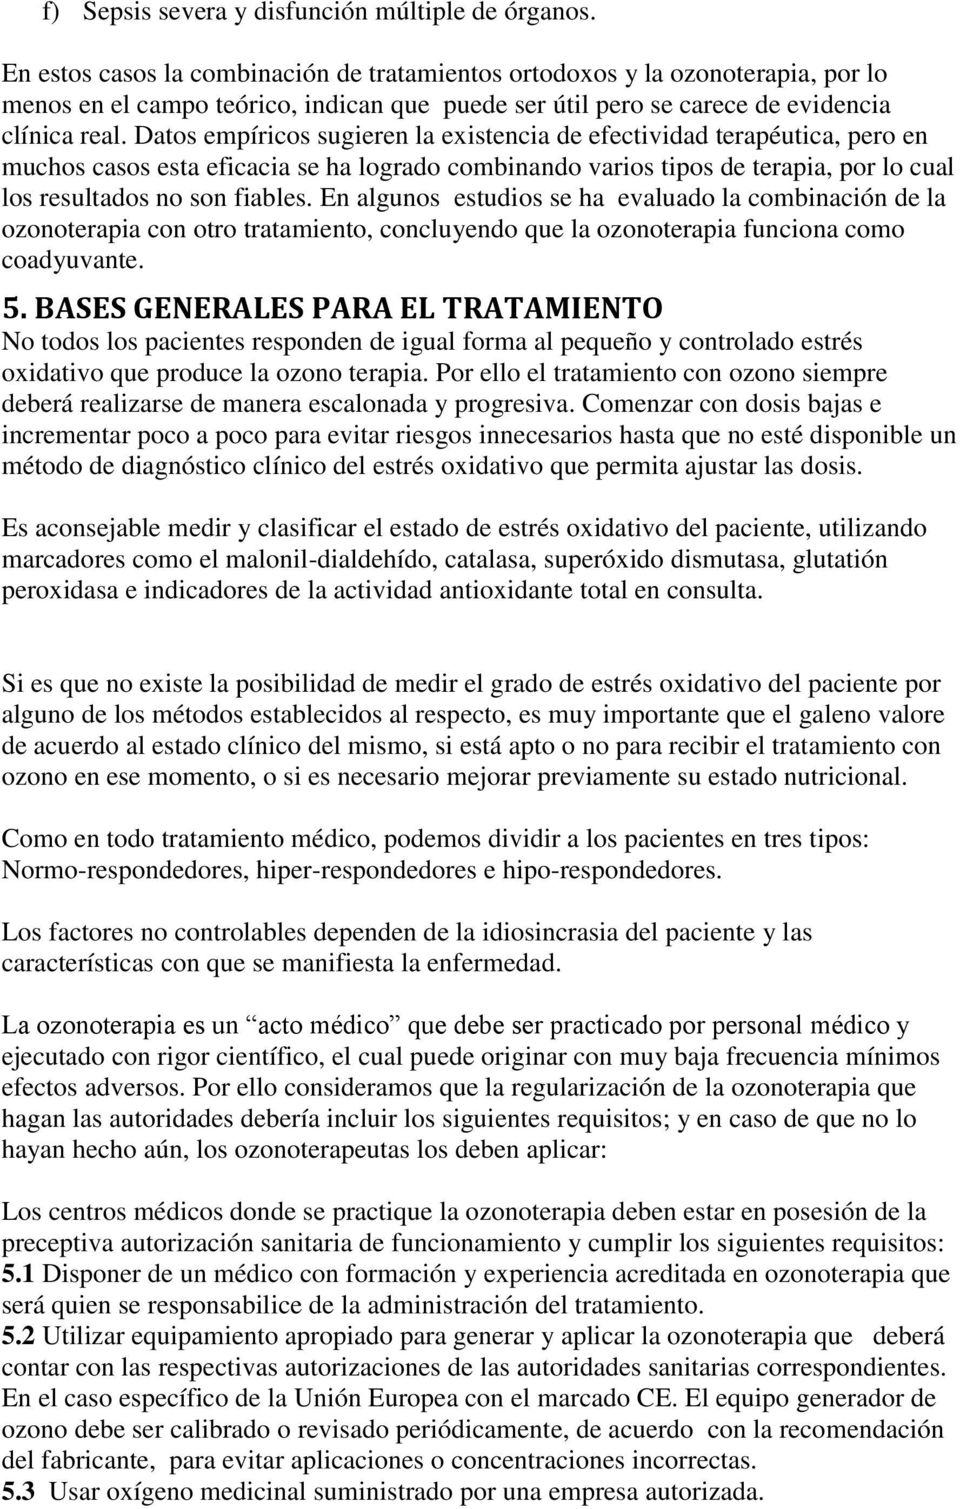 Declaracion De Madrid Sobre La Ozonoterapia Pdf Descargar Libre